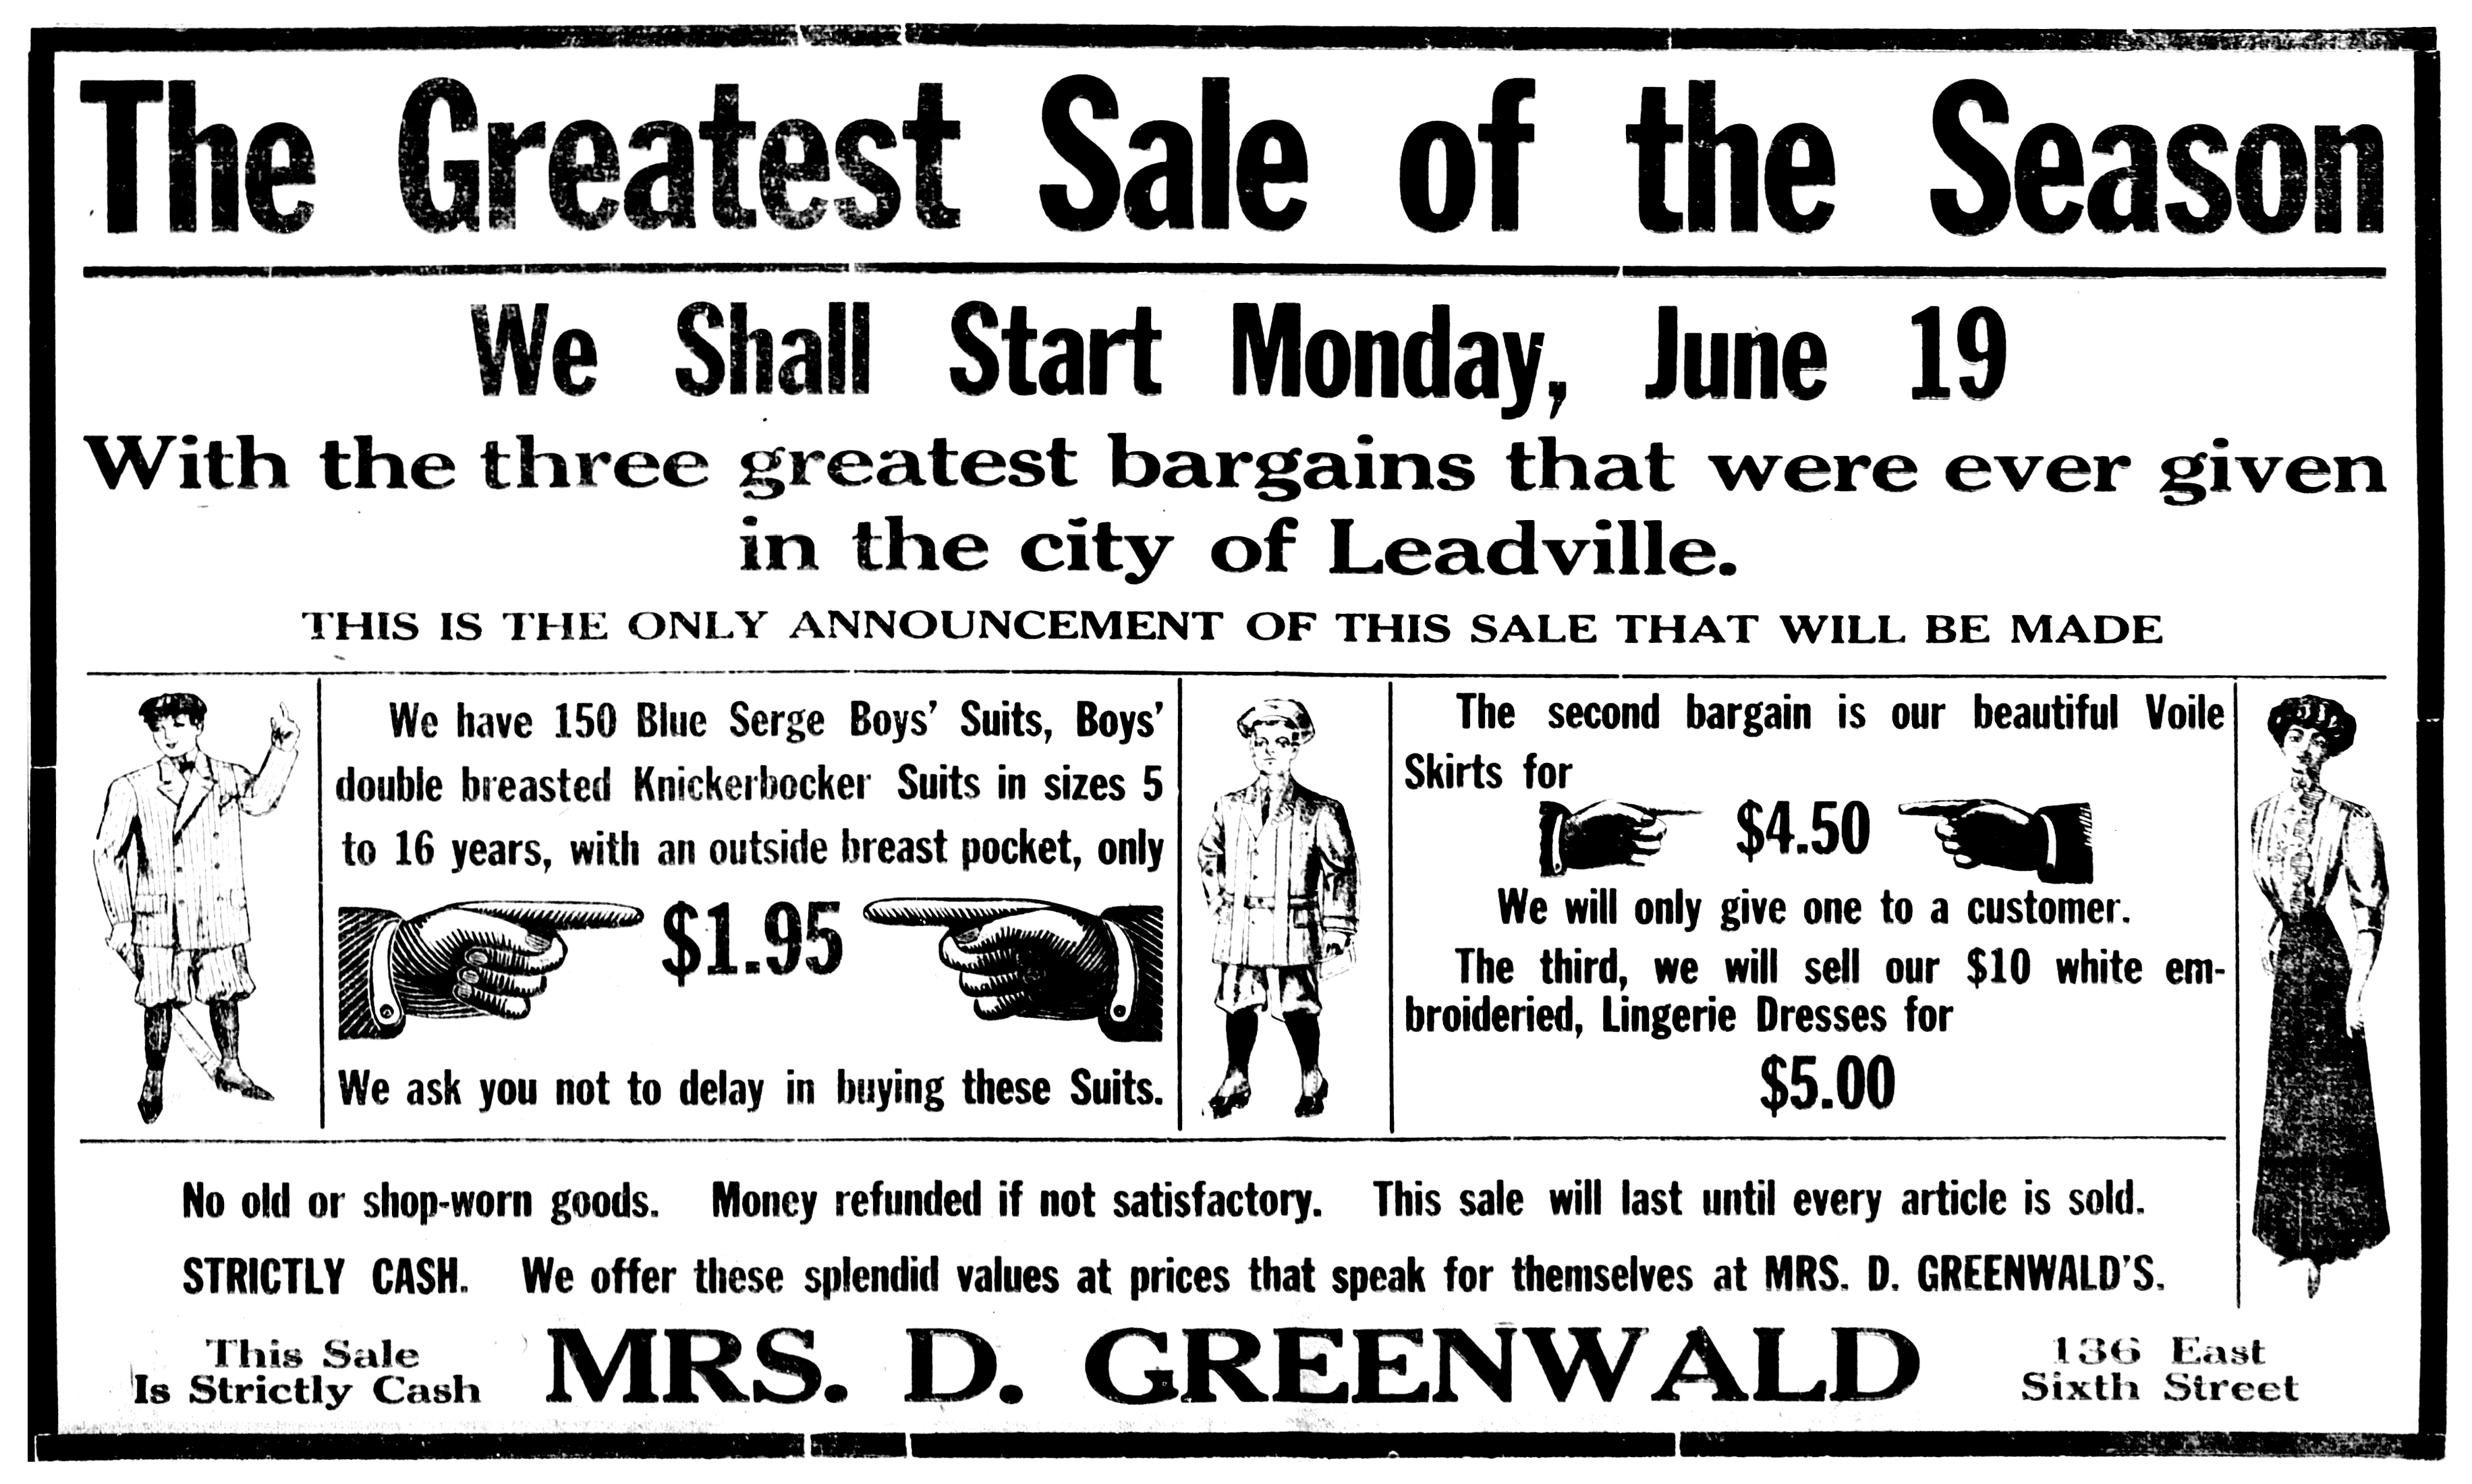 The Herald Democrat, June 18, 1911